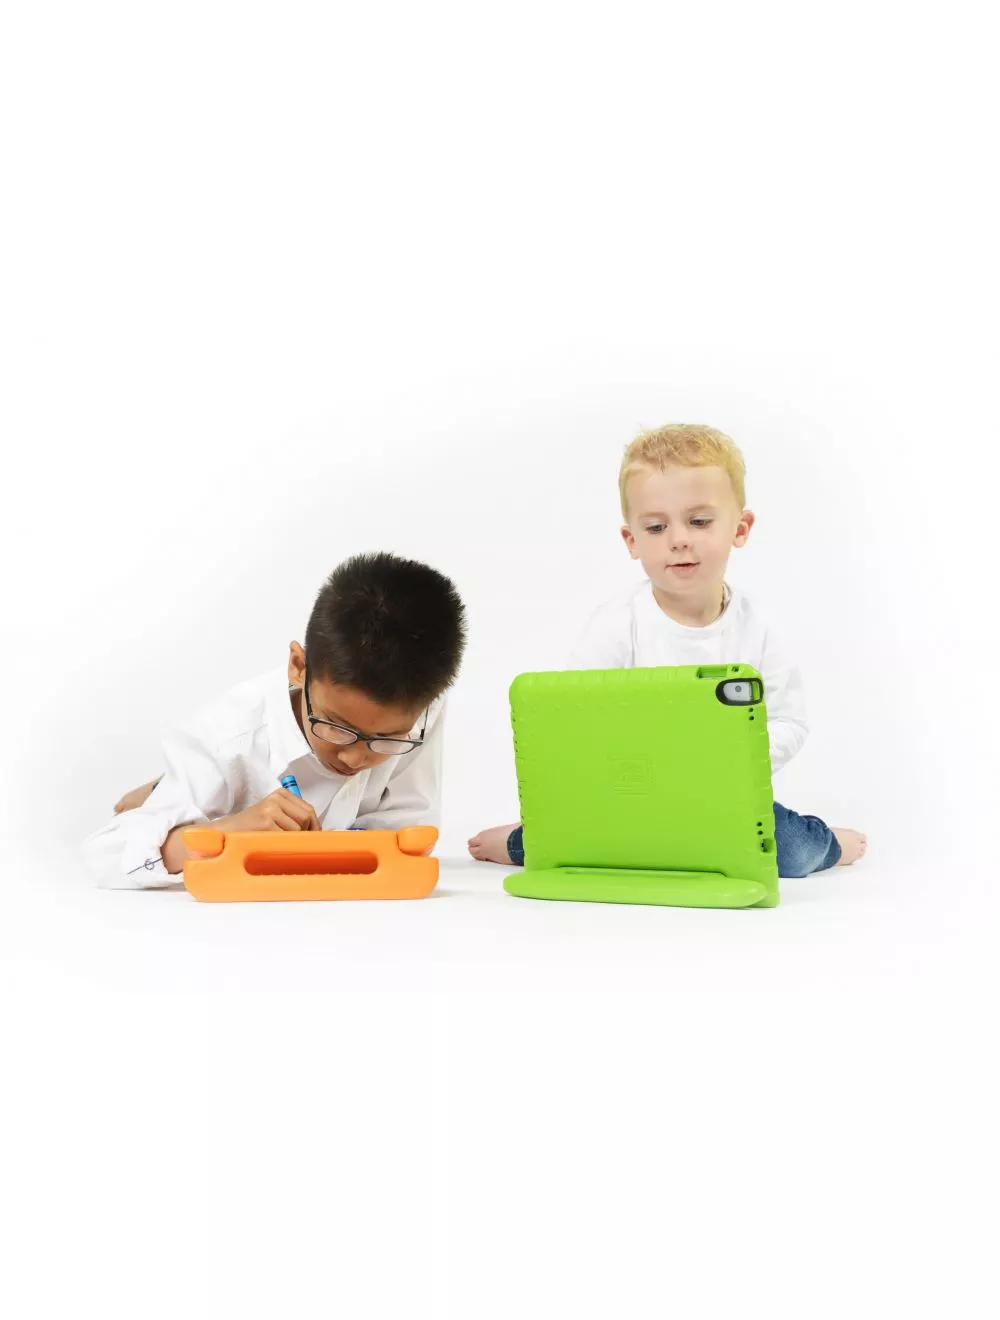 KidsCover housse pour iPad Air 2 – bleu